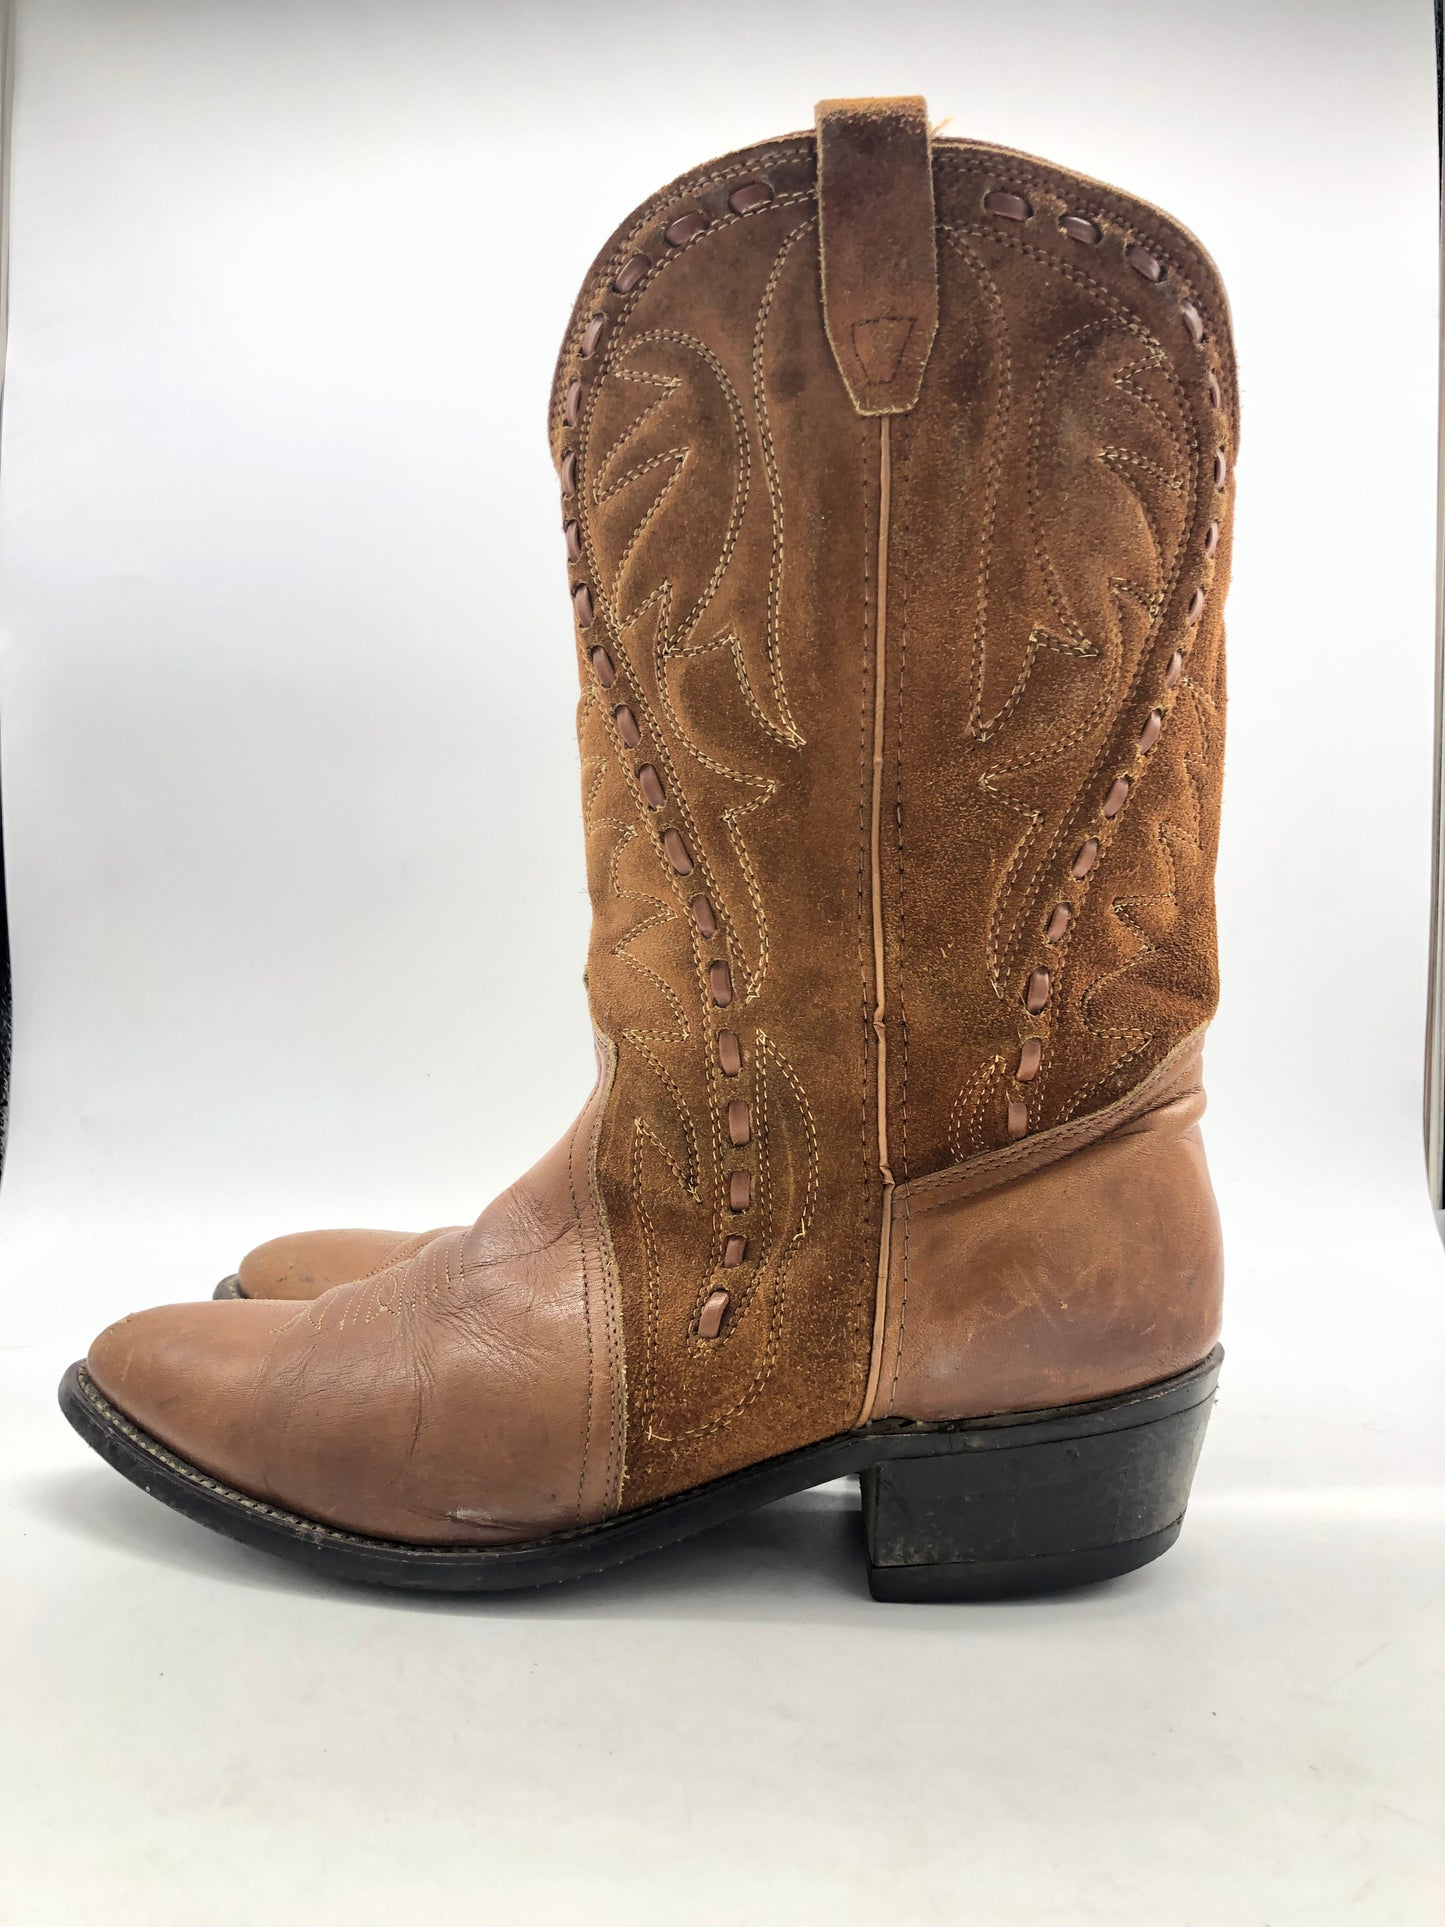 Chesnut Suede/Leather Cowboy Boots Sz 12D